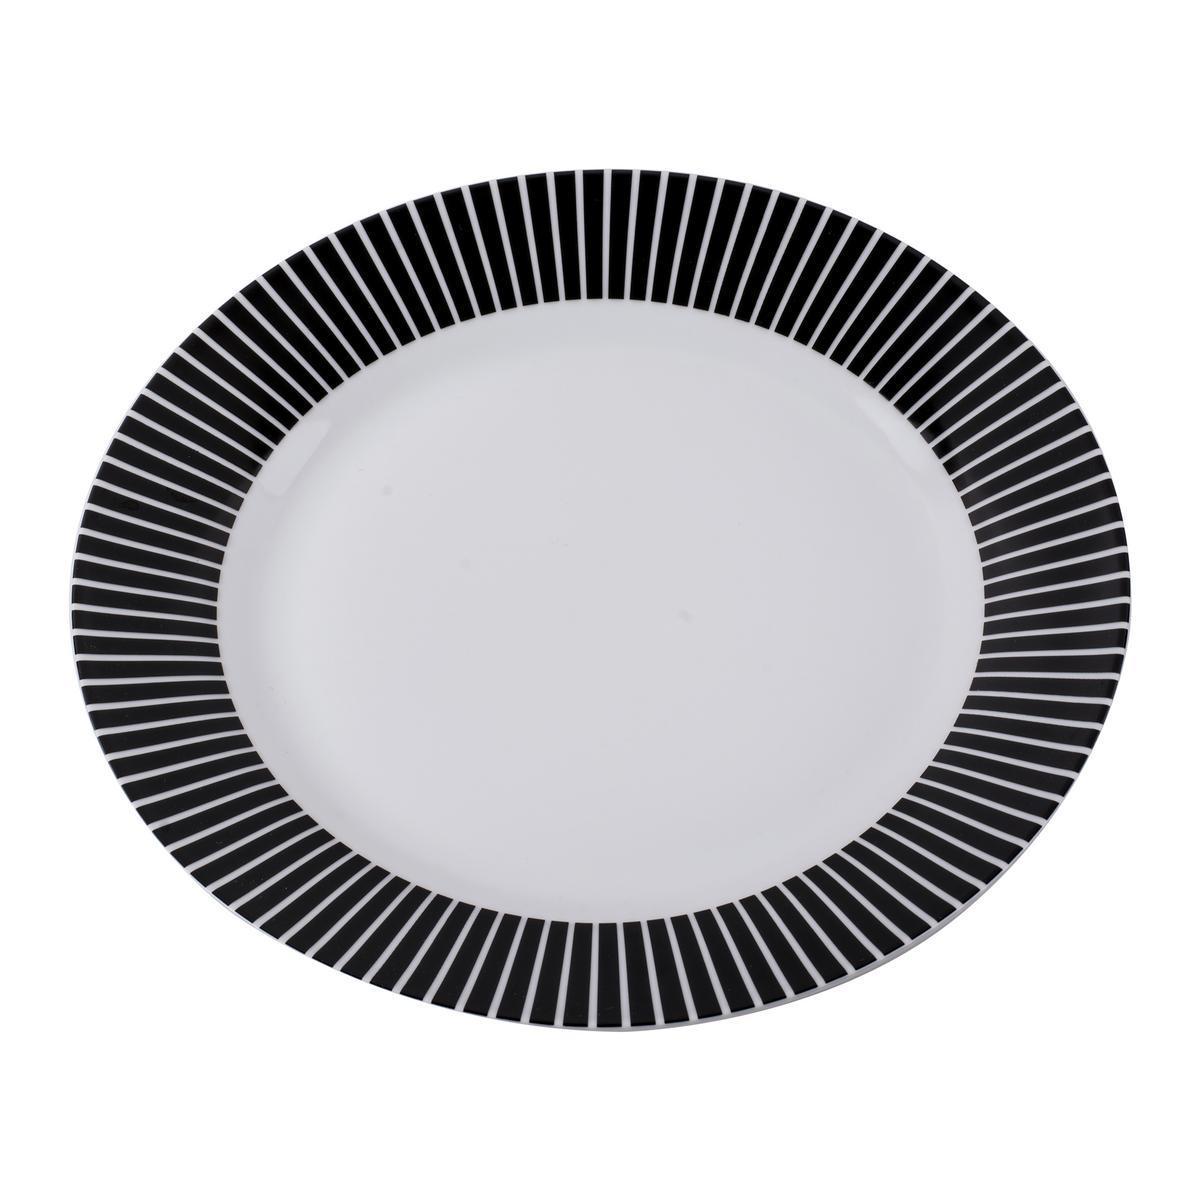 Assiette plate - Porcelaine - Ø 27 cm - Noir et blanc